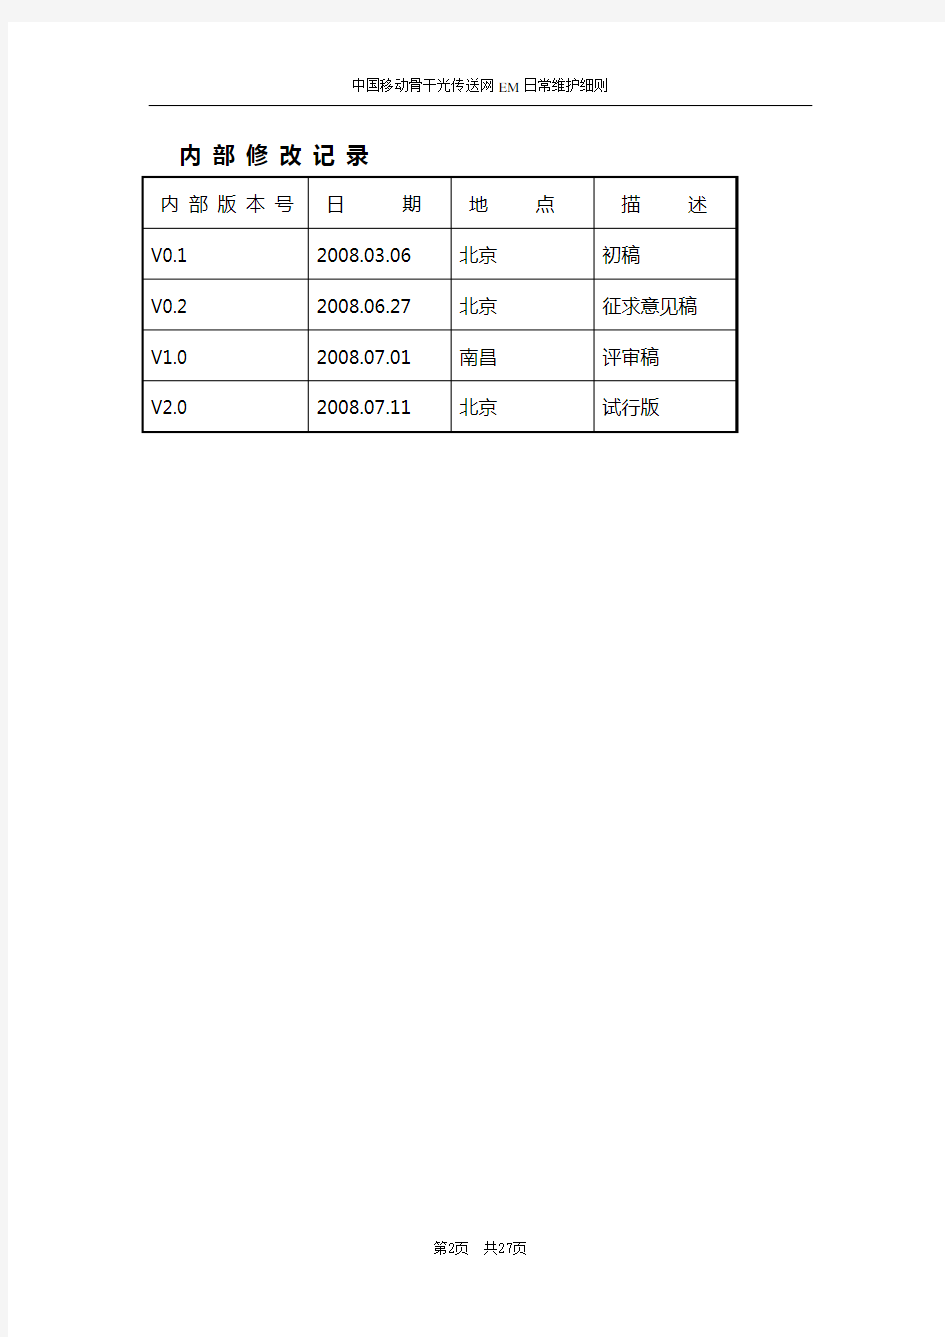 中国移动骨干光传送网EM日常维护细则(试行)